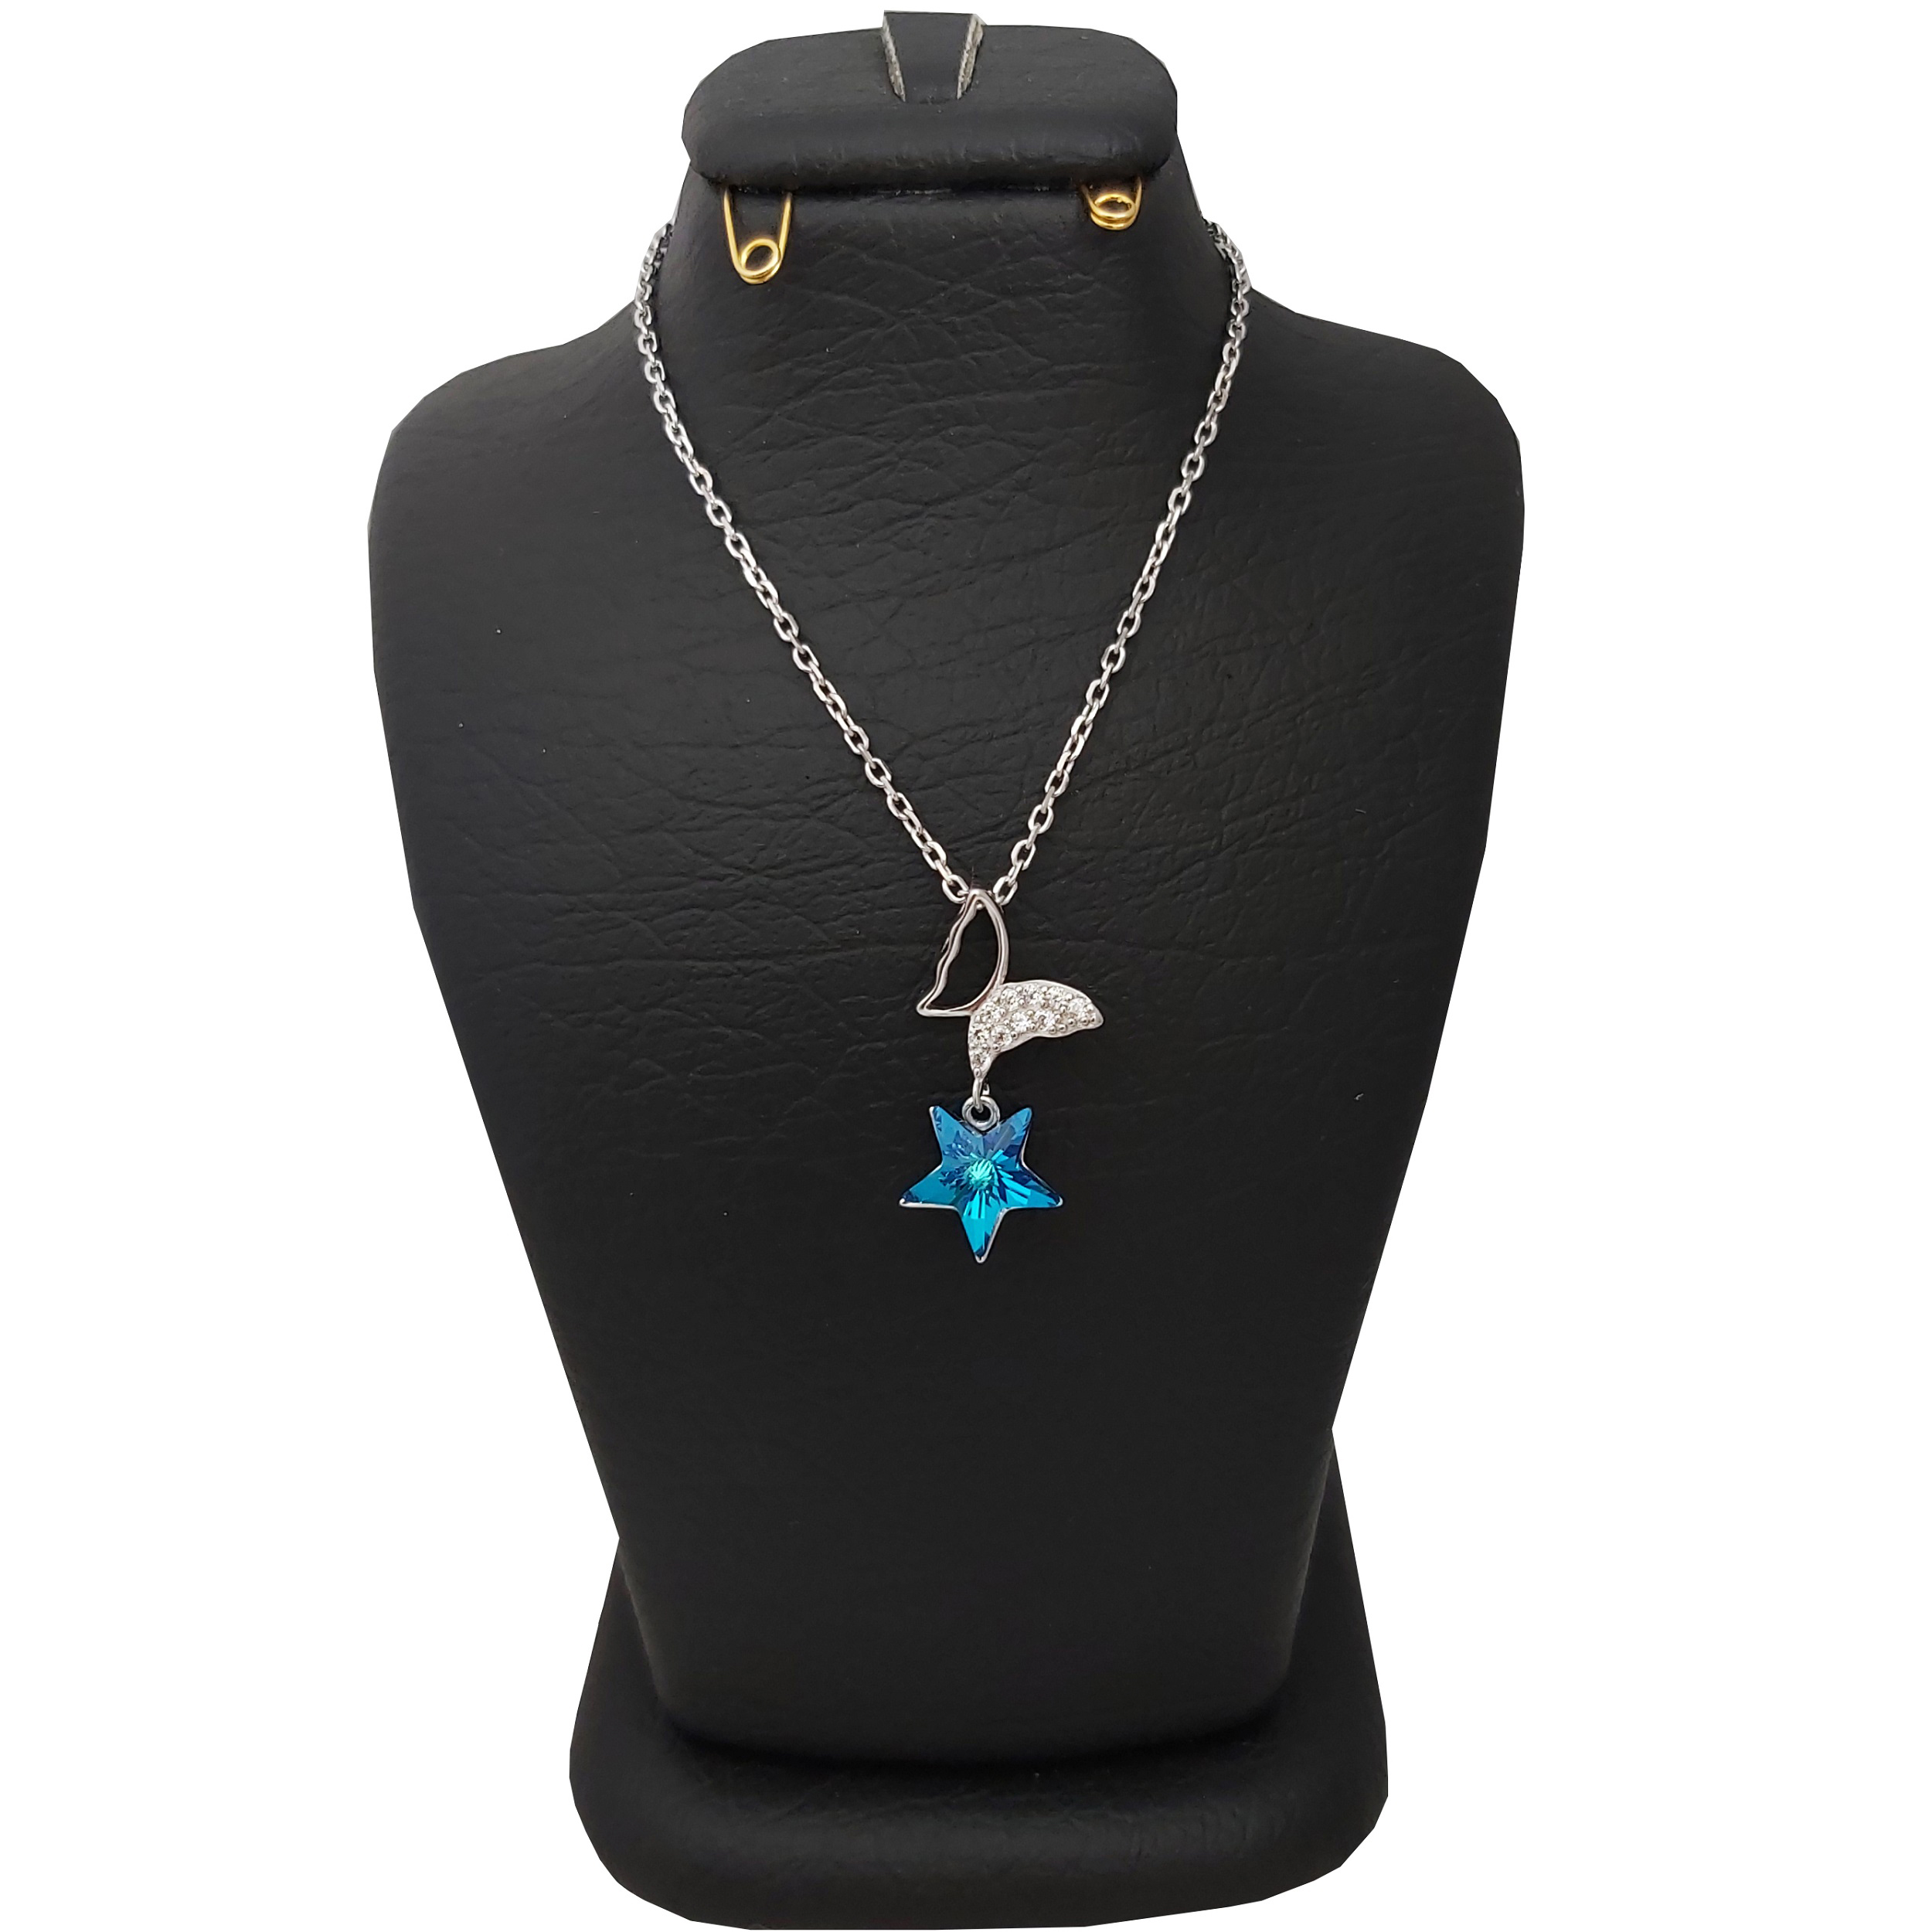 گردنبند نقره زنانه سواروسکی مدل پروانه و ستاره کد 021